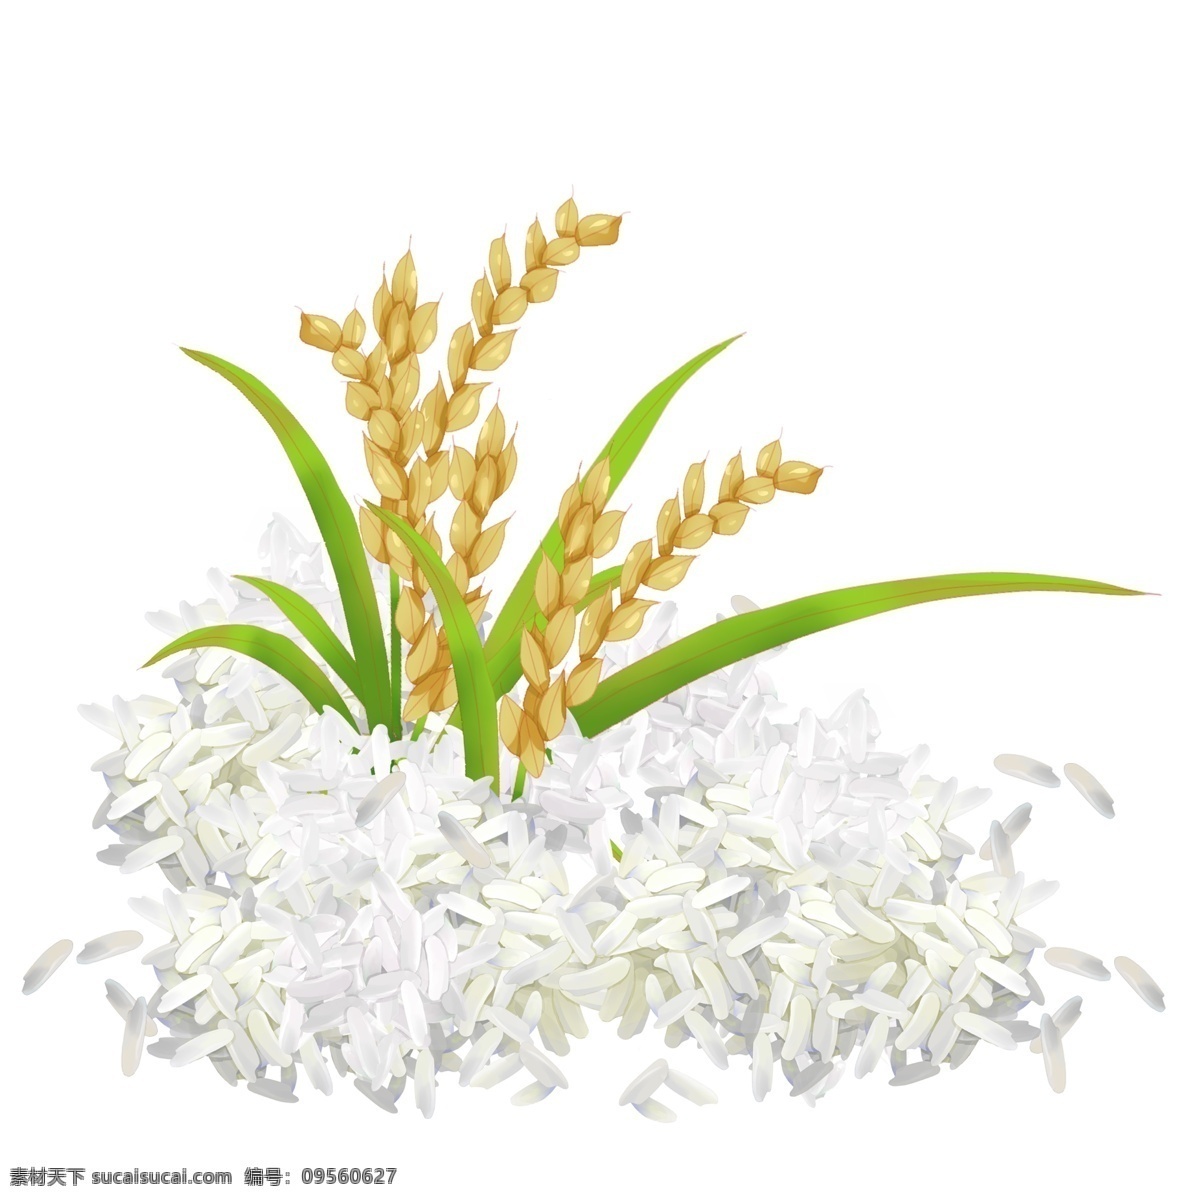 五谷丰登 大米 插图 创意大米插图 稻穗 米粒中的稻穗 创意丰收插画 绿色食品